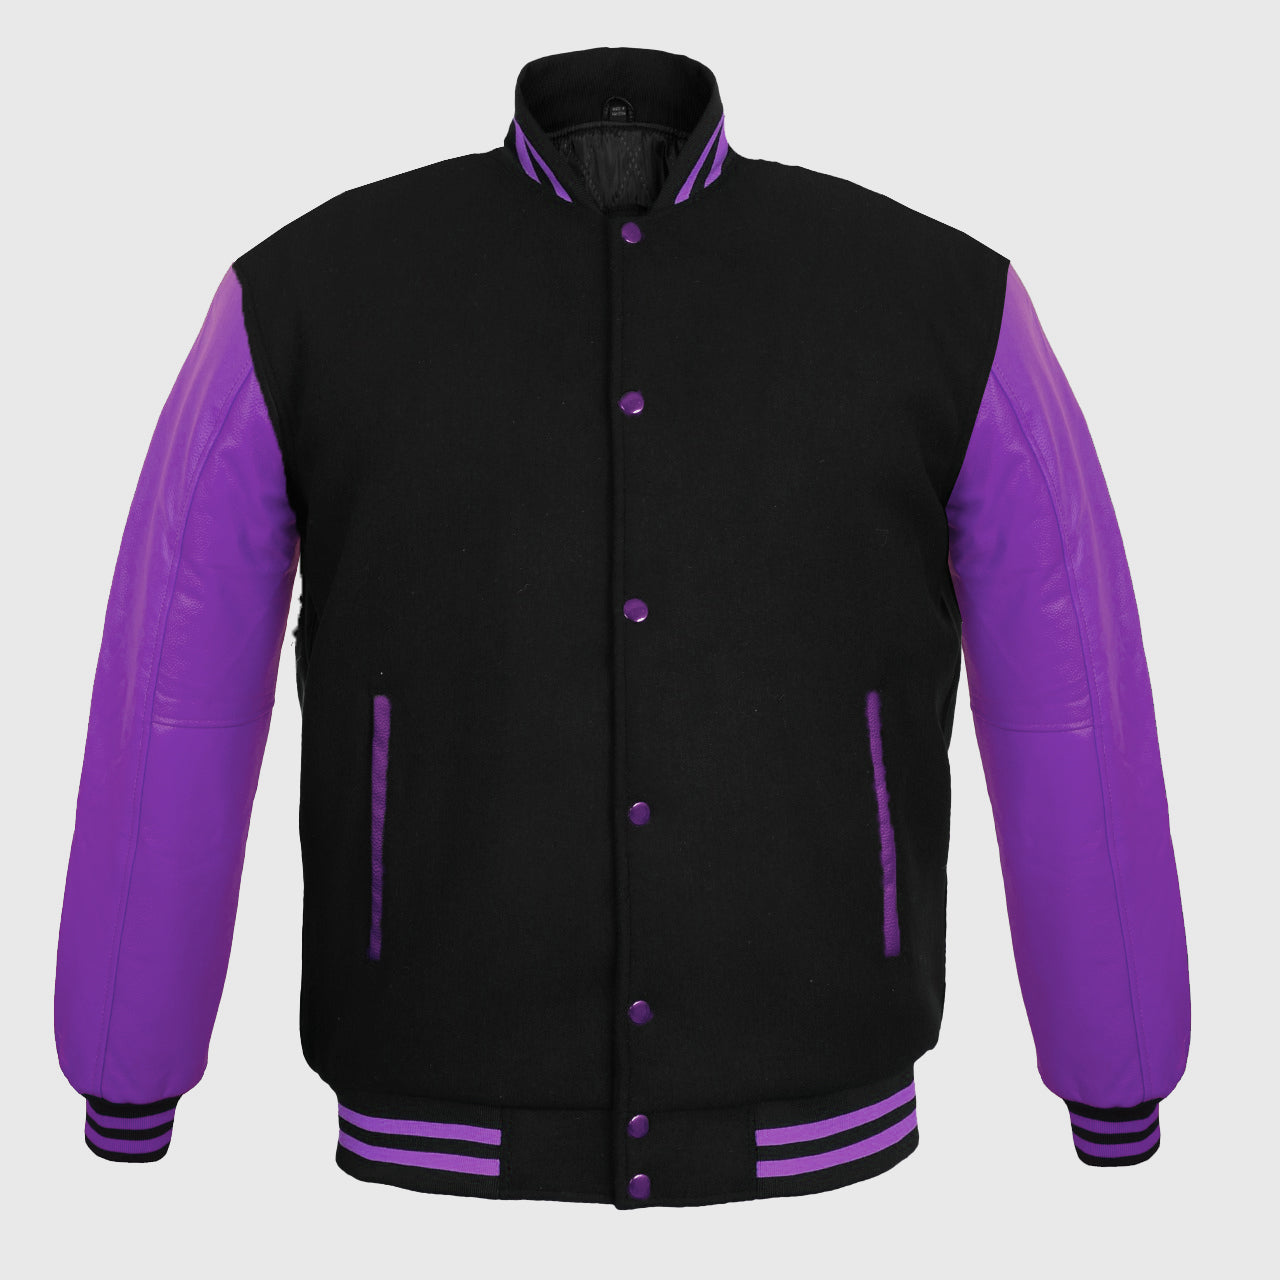 Purple Letterman Varsity Hoody Baseball Jacket with Leather Sleeve